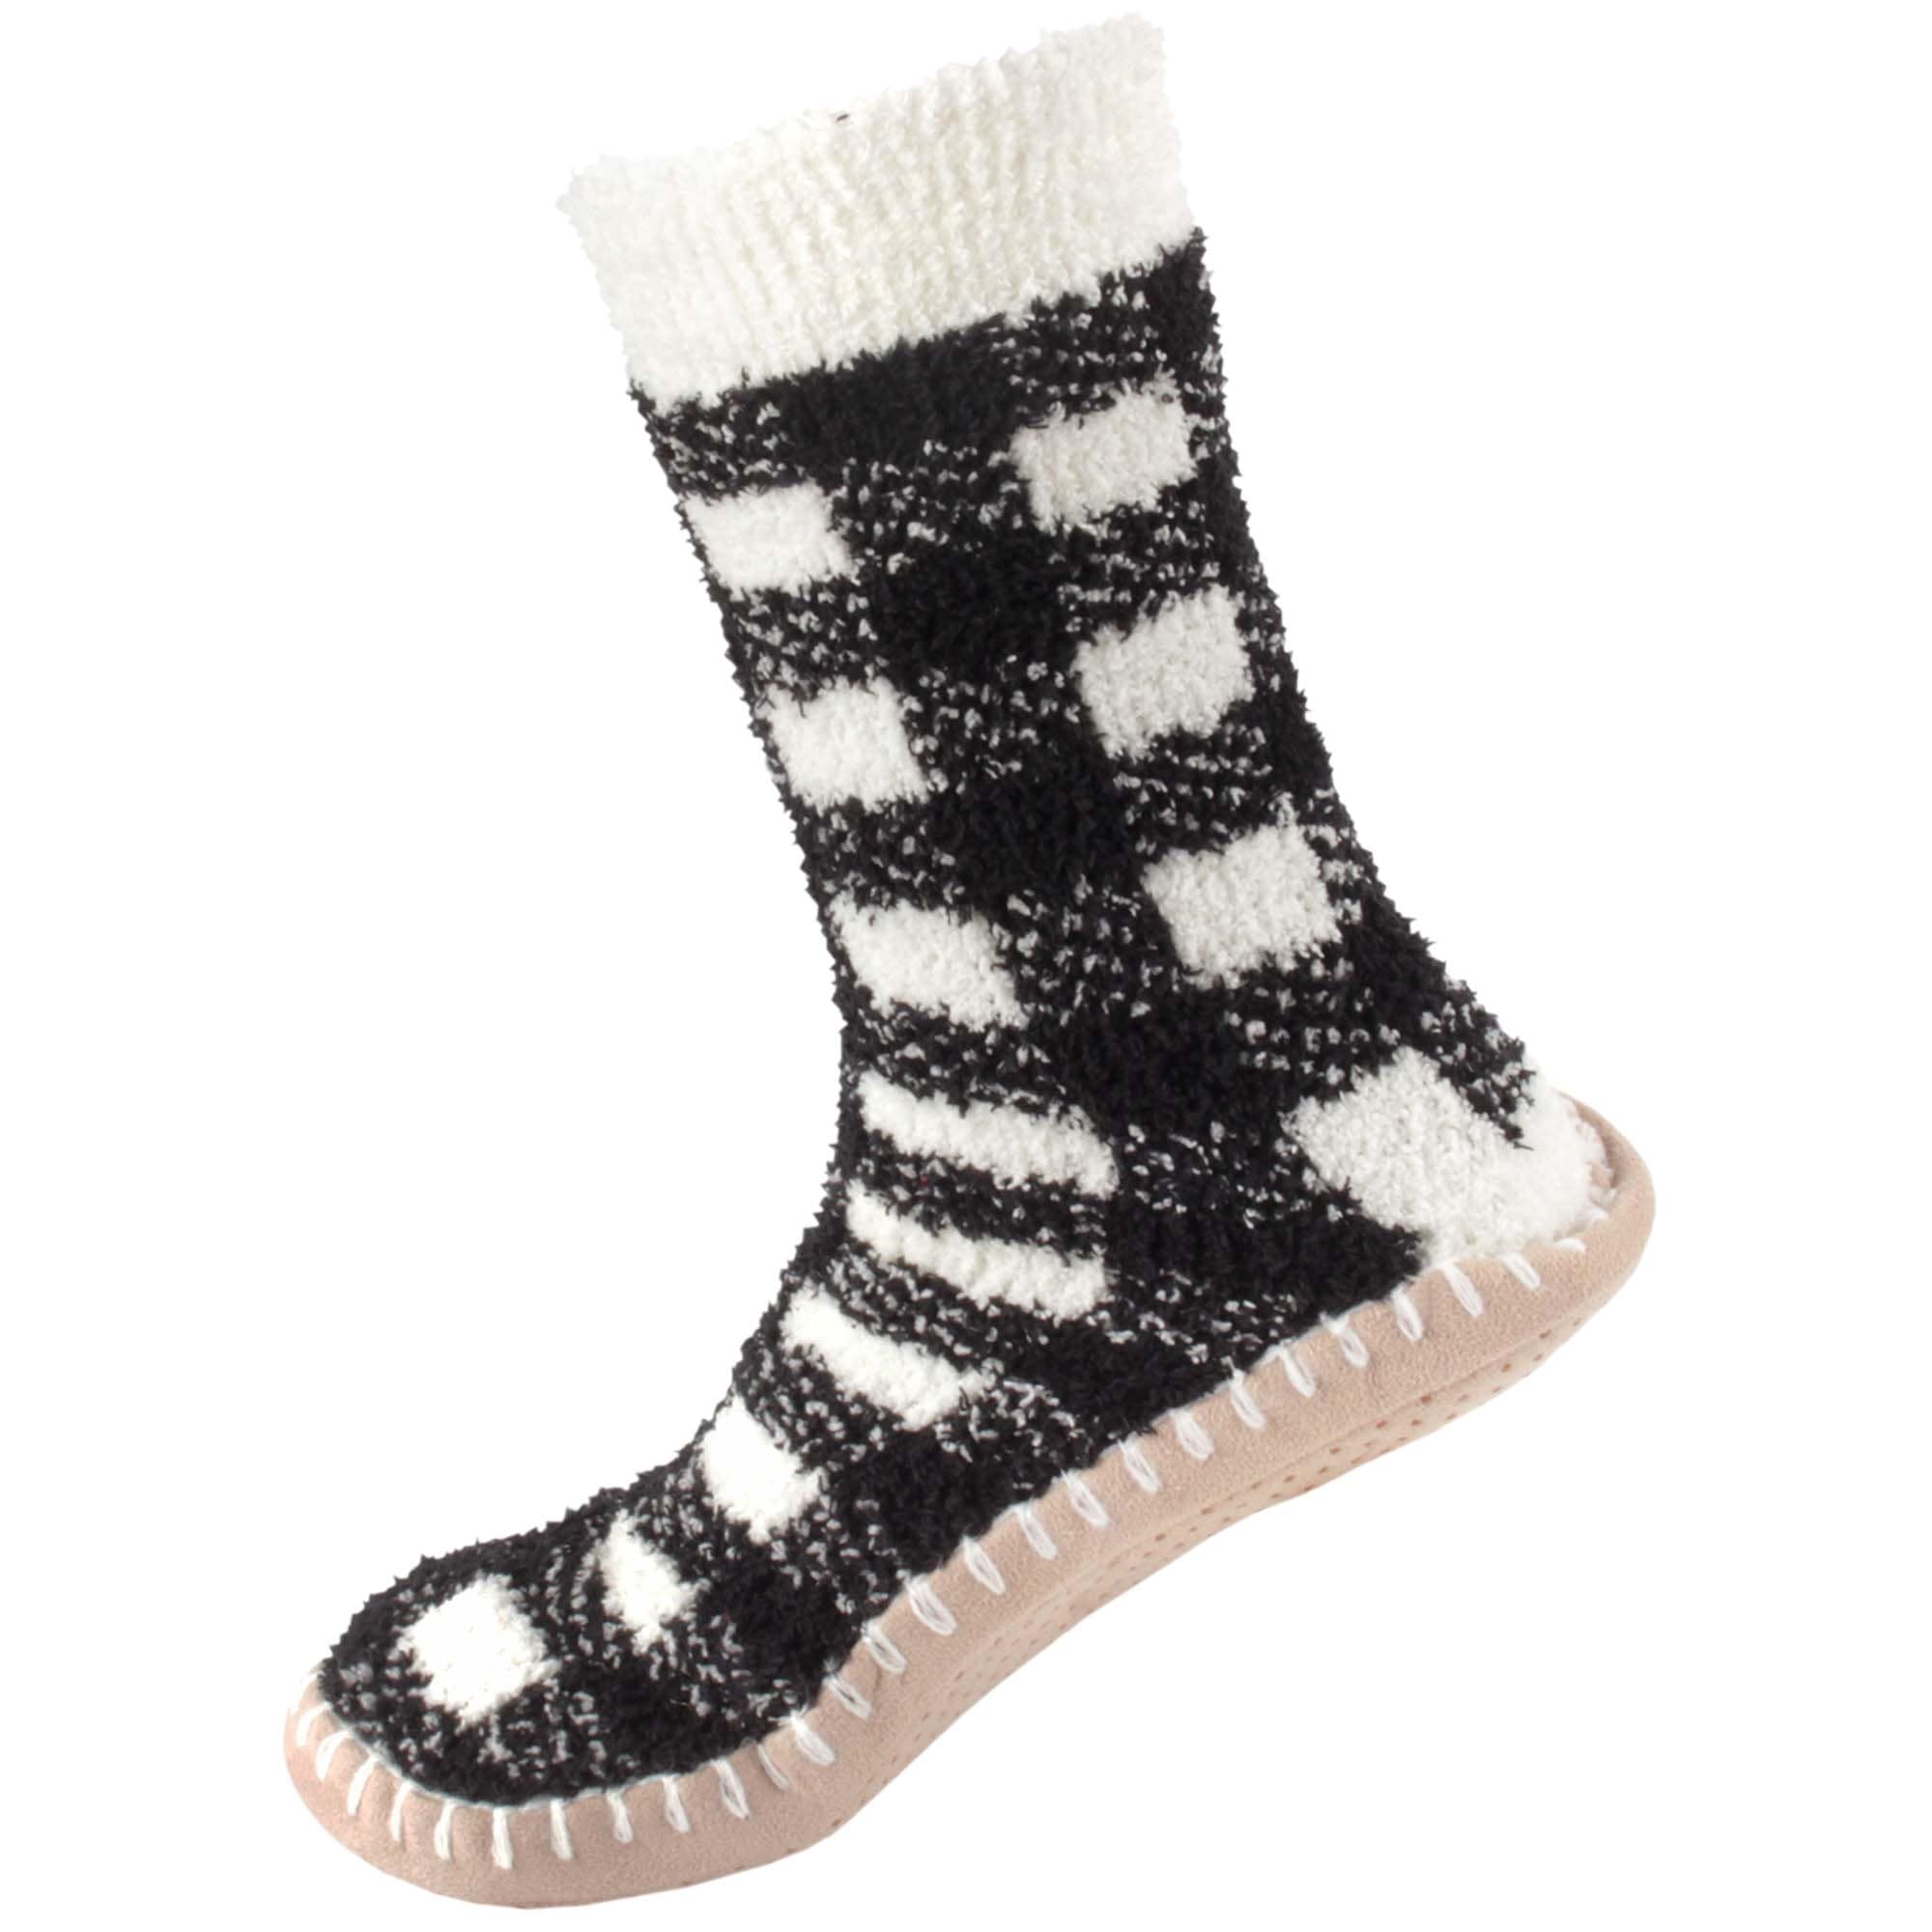 Slipper Socks in Black and White. Hand Knit Slipper, Hygge Sock